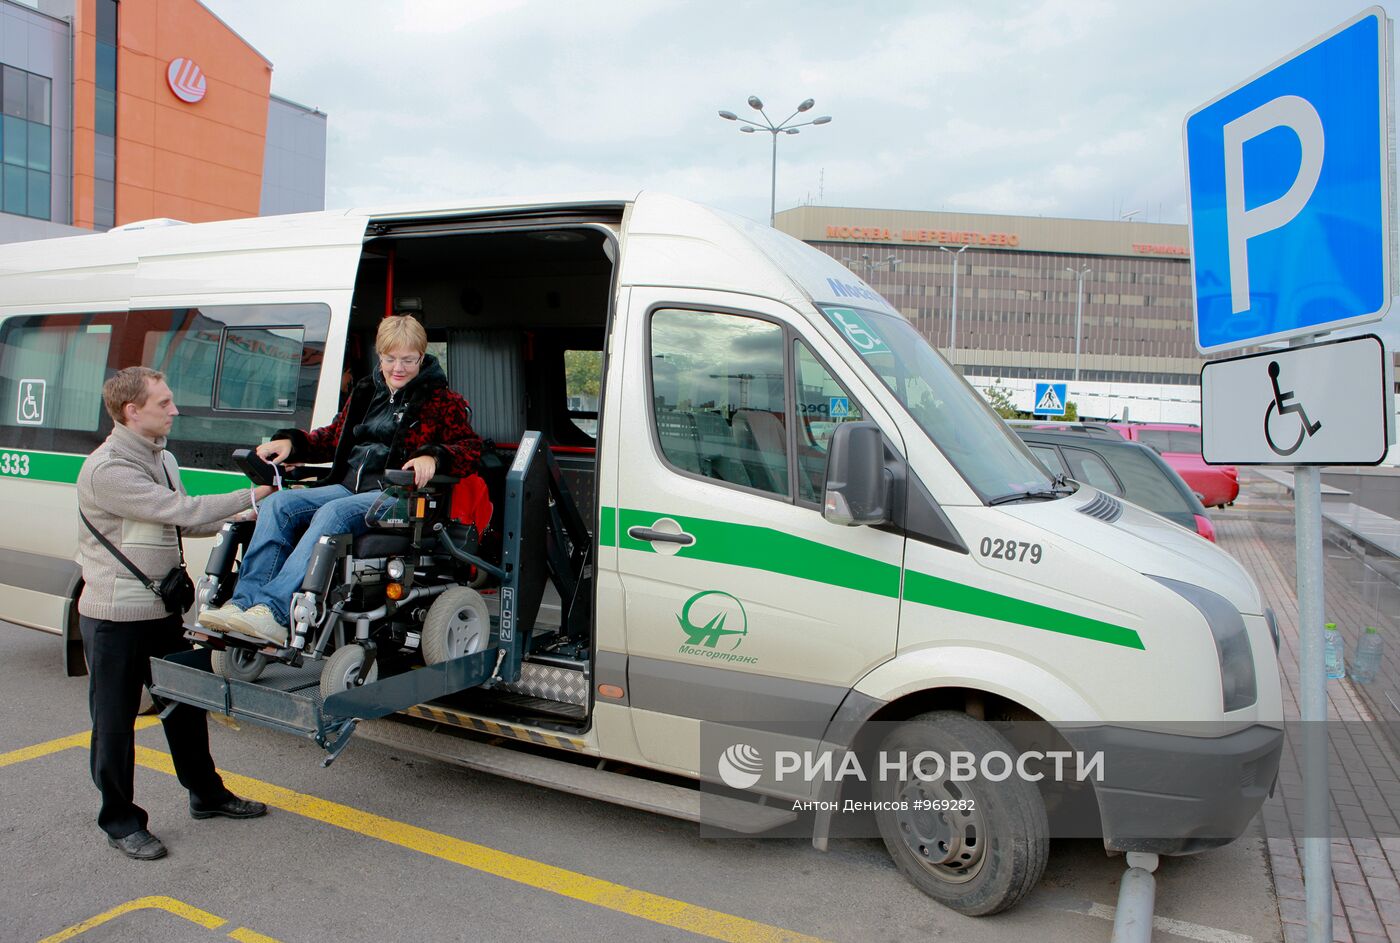 Обслуживание пассажиров на транспорте. Транспорт для инвалидов. Транспорт для маломобильных людей. Автобус для инвалидов. Маломобильные пассажиры.